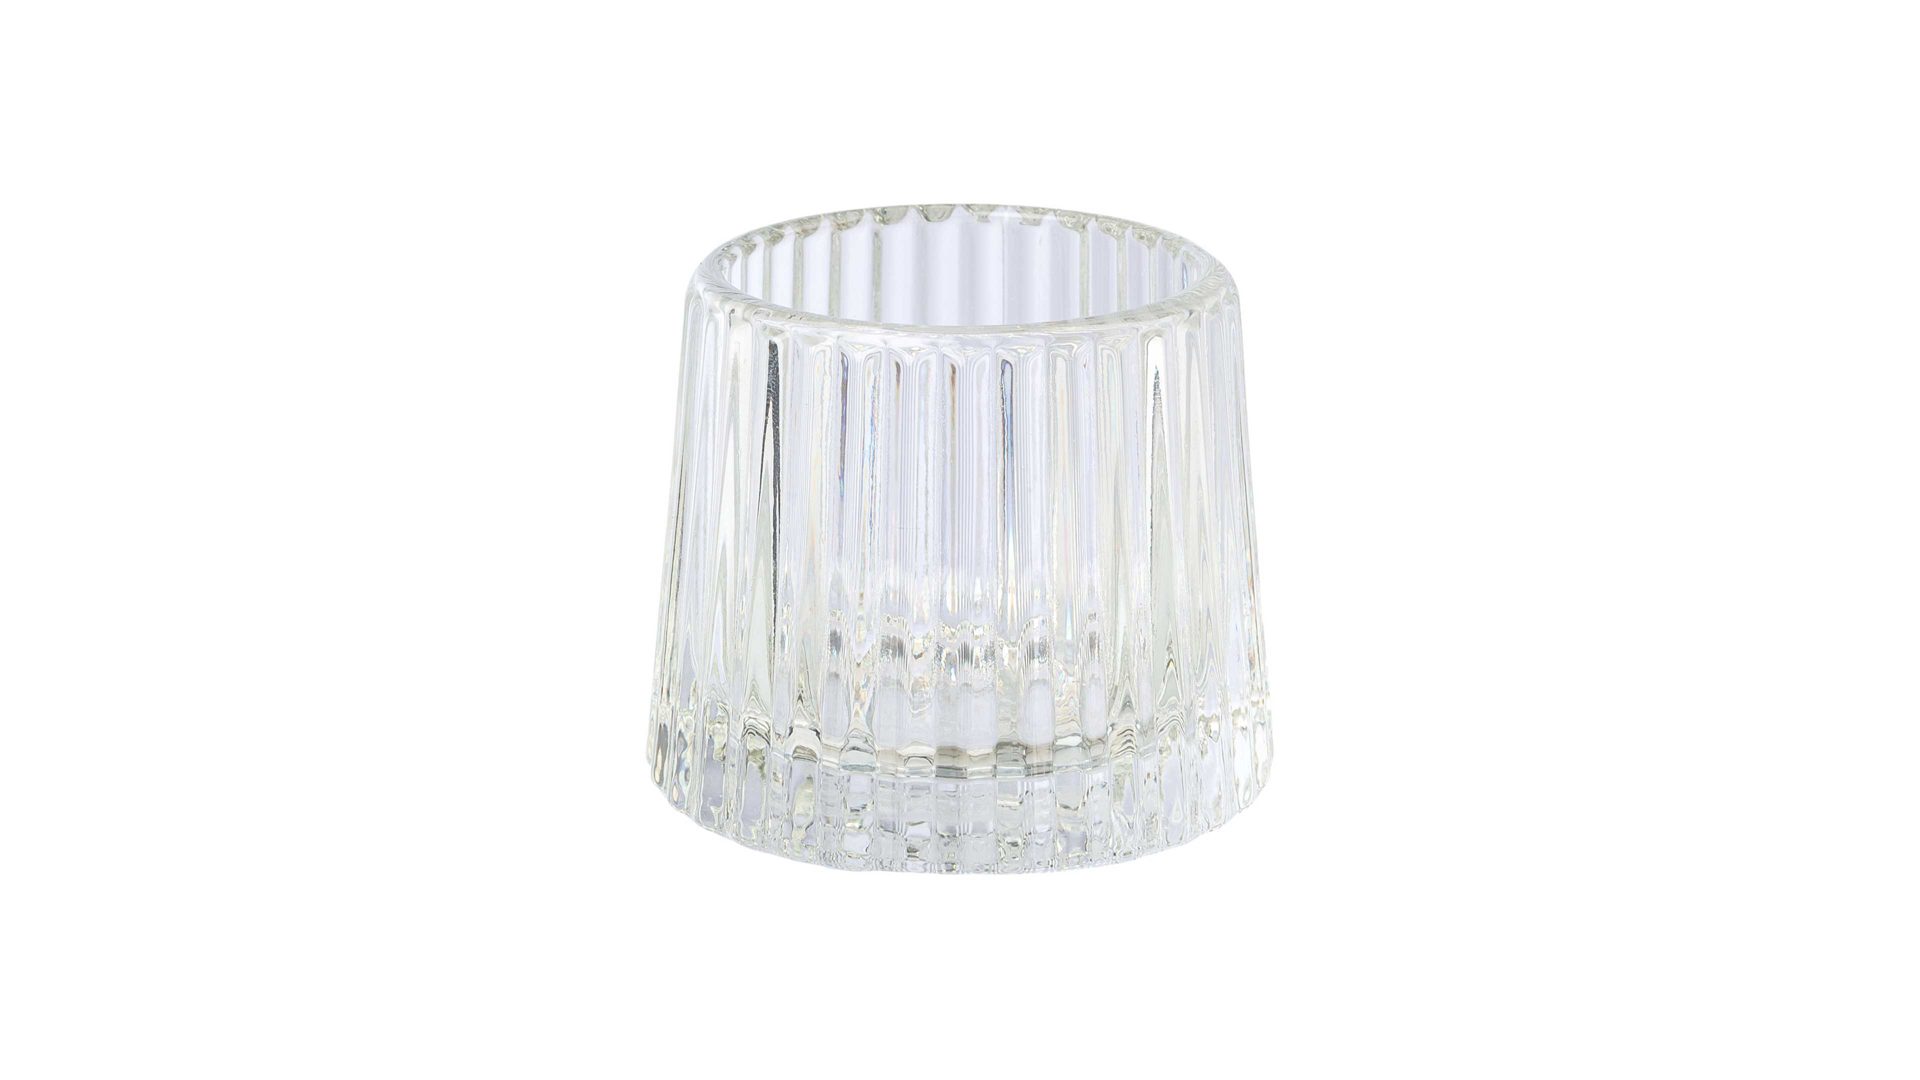 Windlicht Gasper aus Glas in Transparent Teelichtglas Tayra Klarglas - Höhe ca. 7 cm